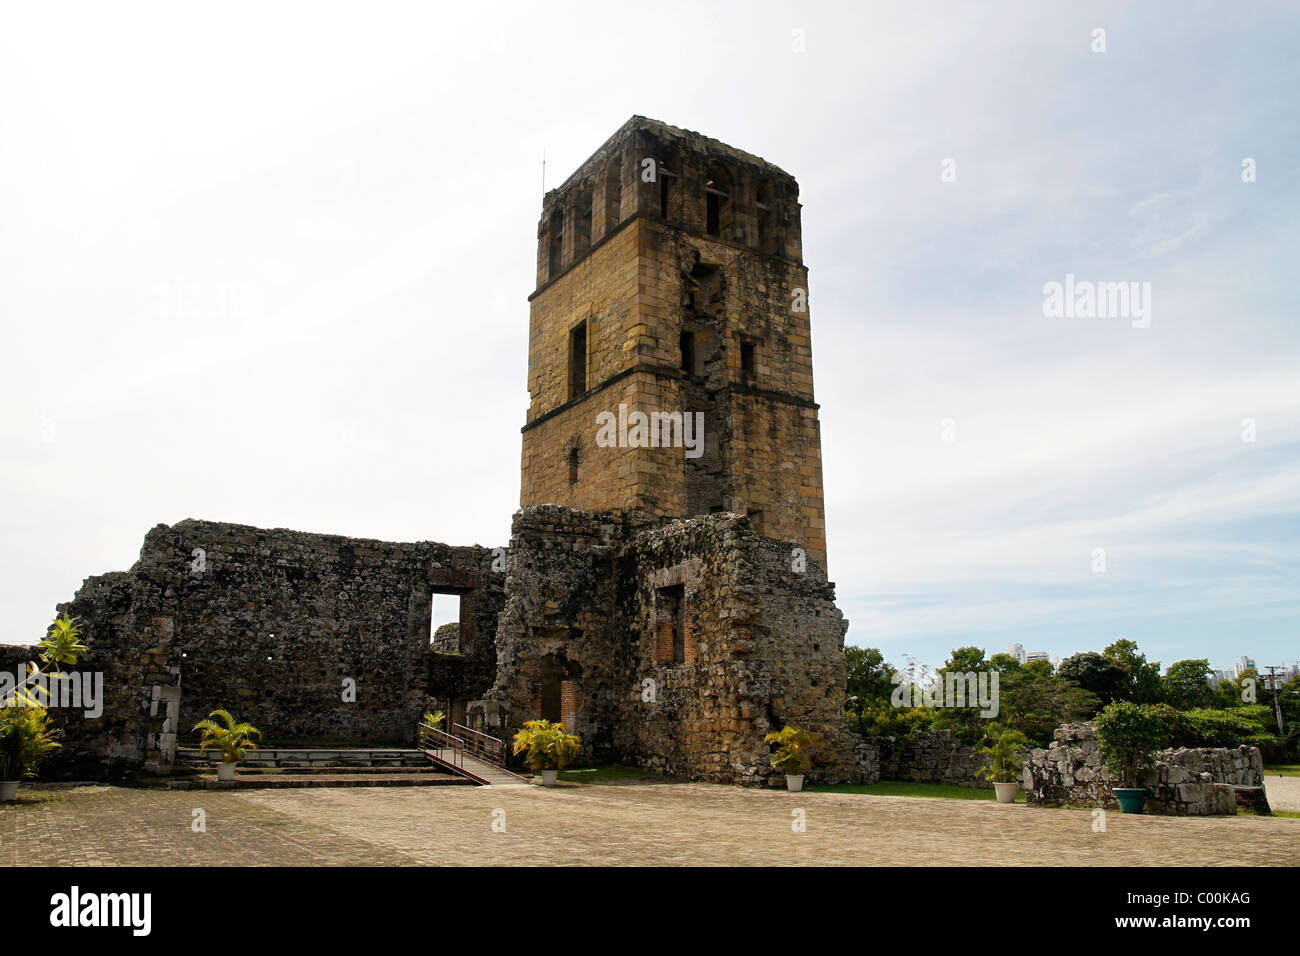 La tour de la cathédrale. Vieux Panama, Panama, République de Panama, Amérique Centrale Banque D'Images